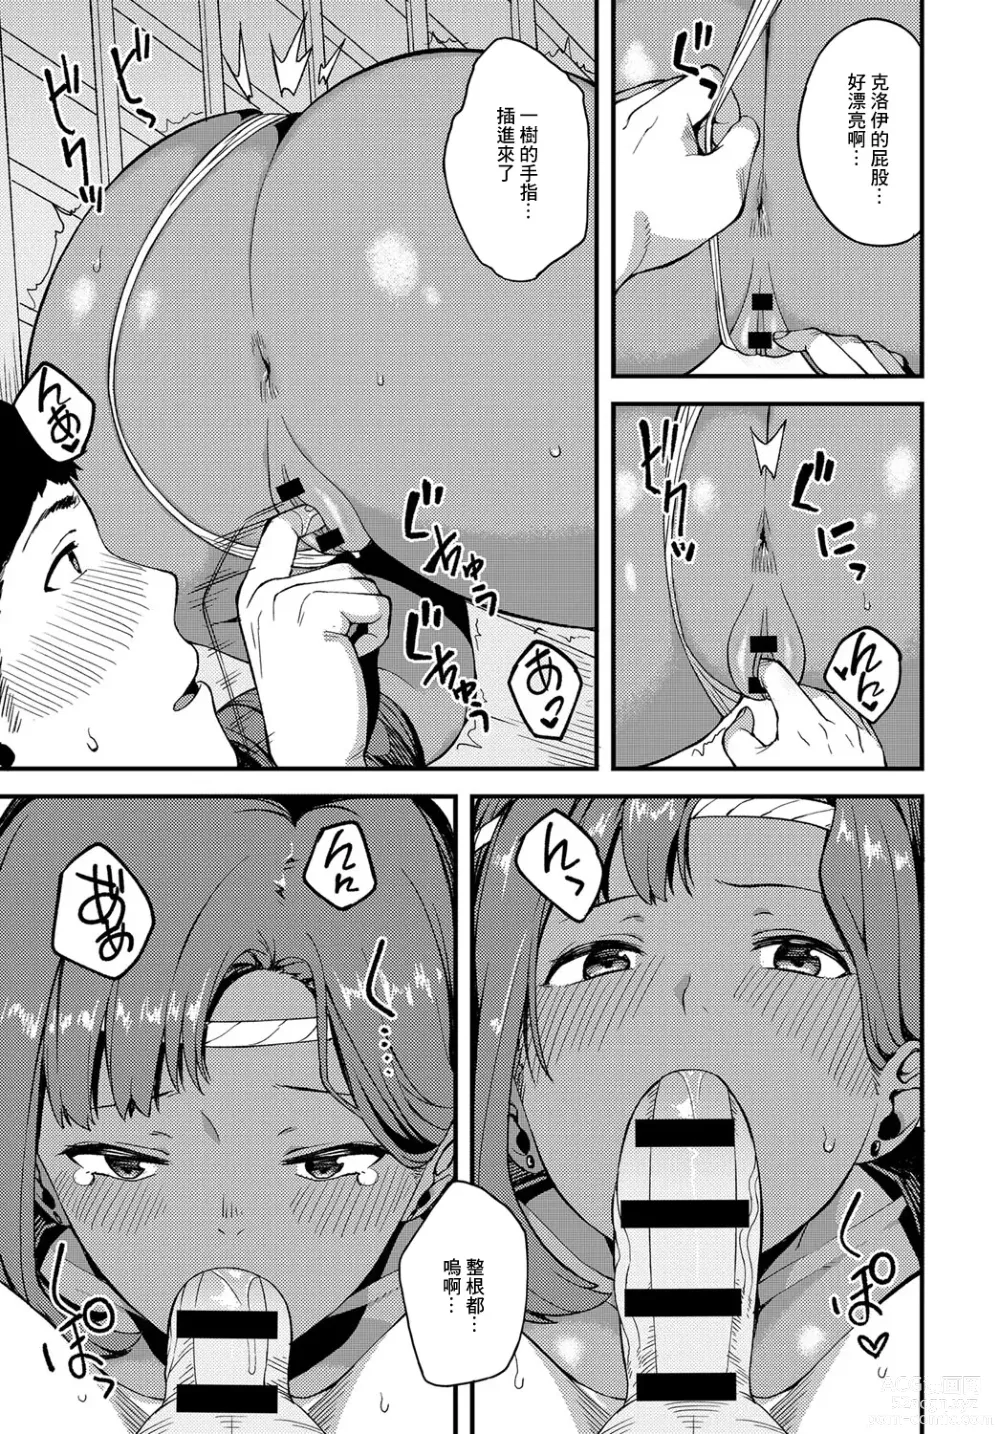 Page 7 of manga Natsukoi Hanabi